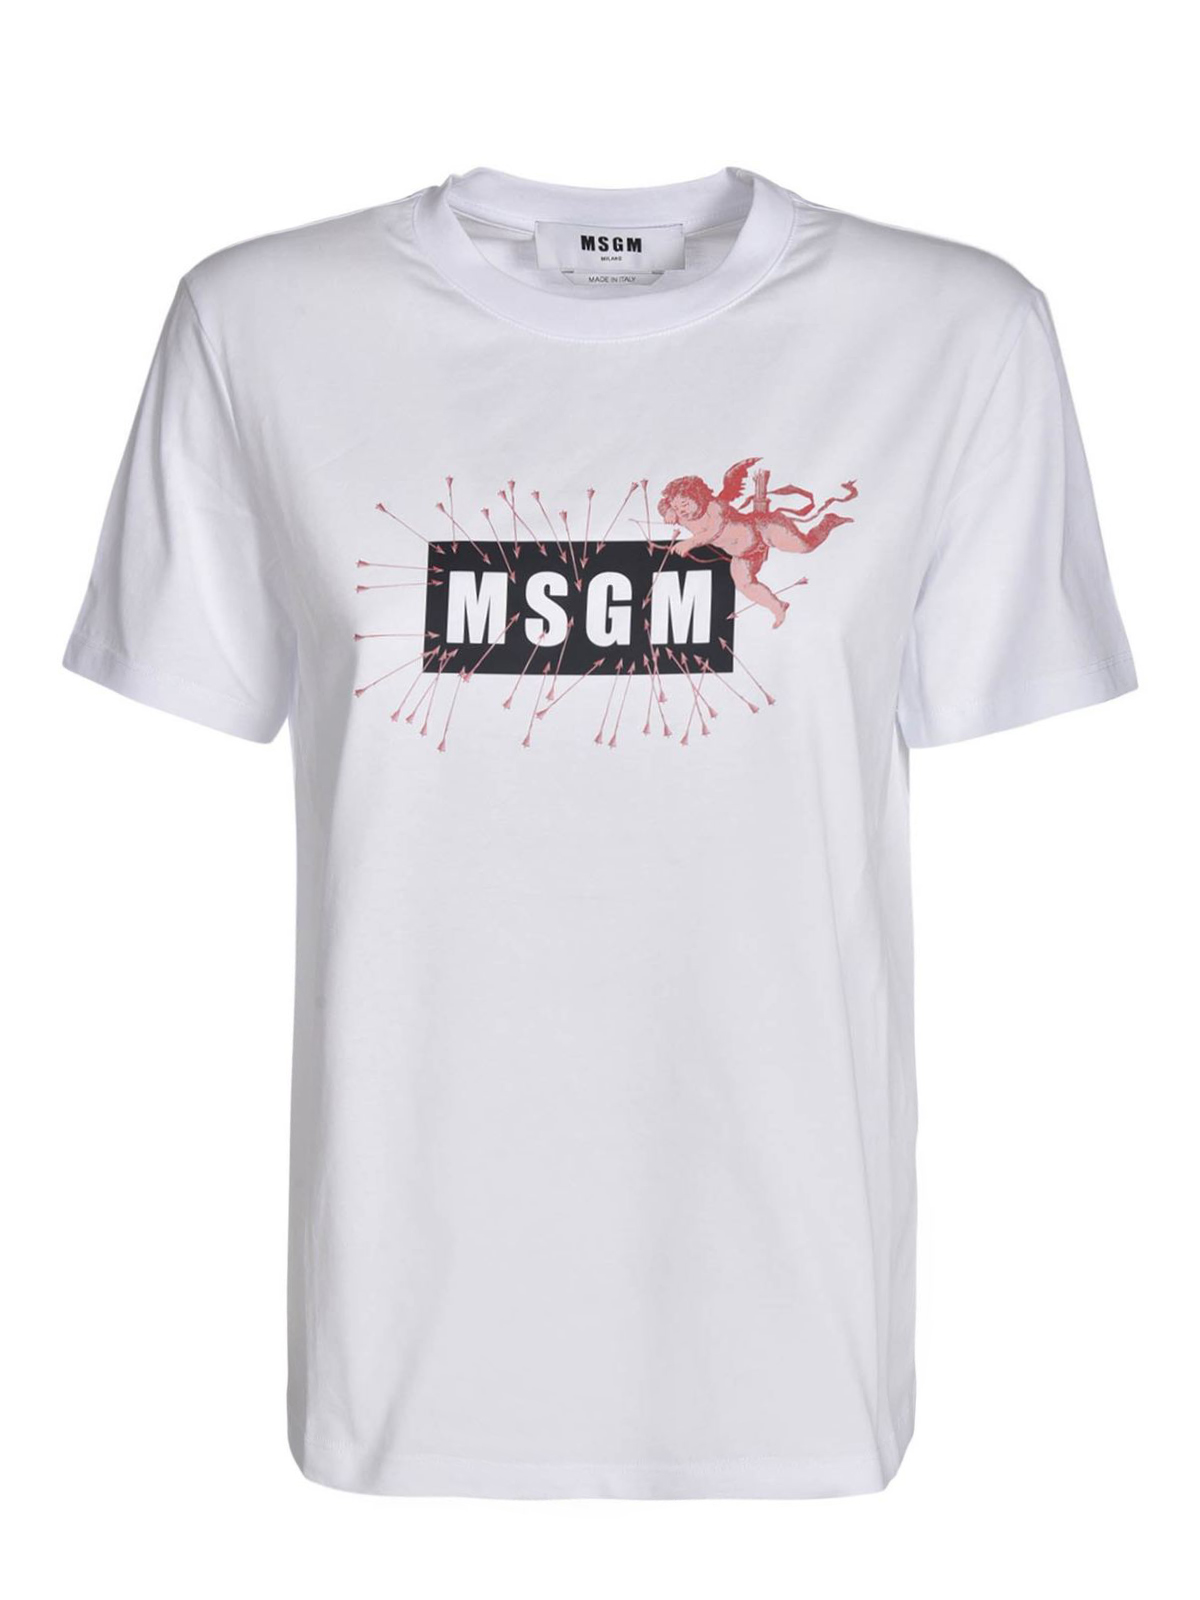 Tシャツ M.S.G.M. - Tシャツ - 白 - 2941MDM18120779801